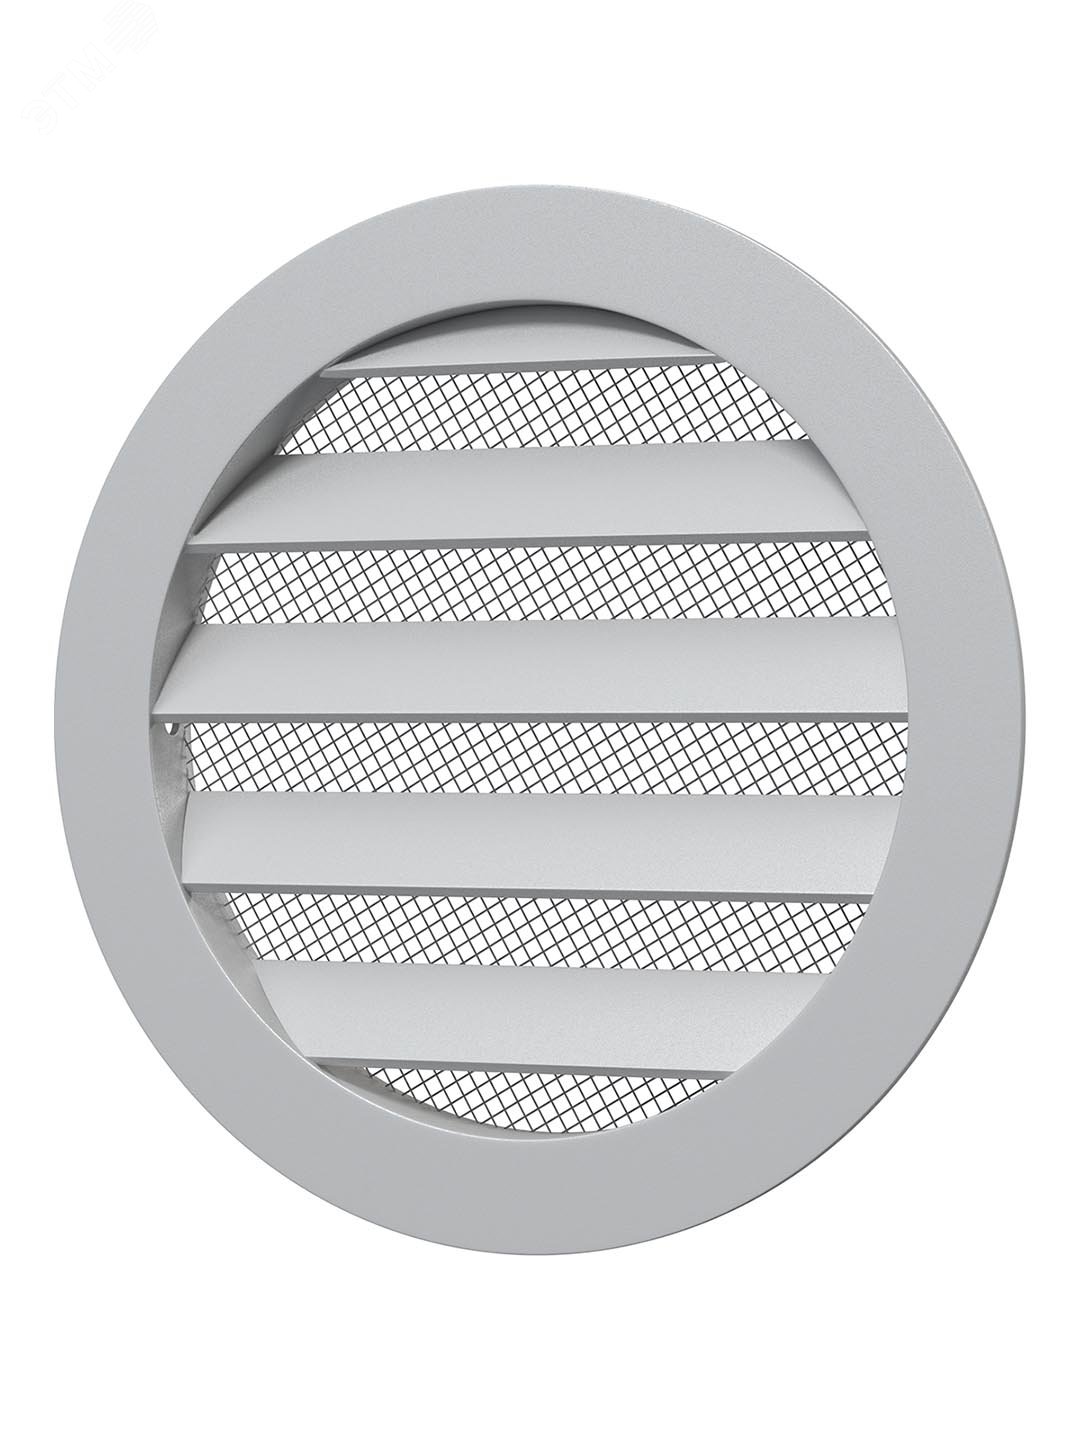 Решетка вентиляционная круглая D125 алюминиевая с фланцем D100 10РКМ ERA - превью